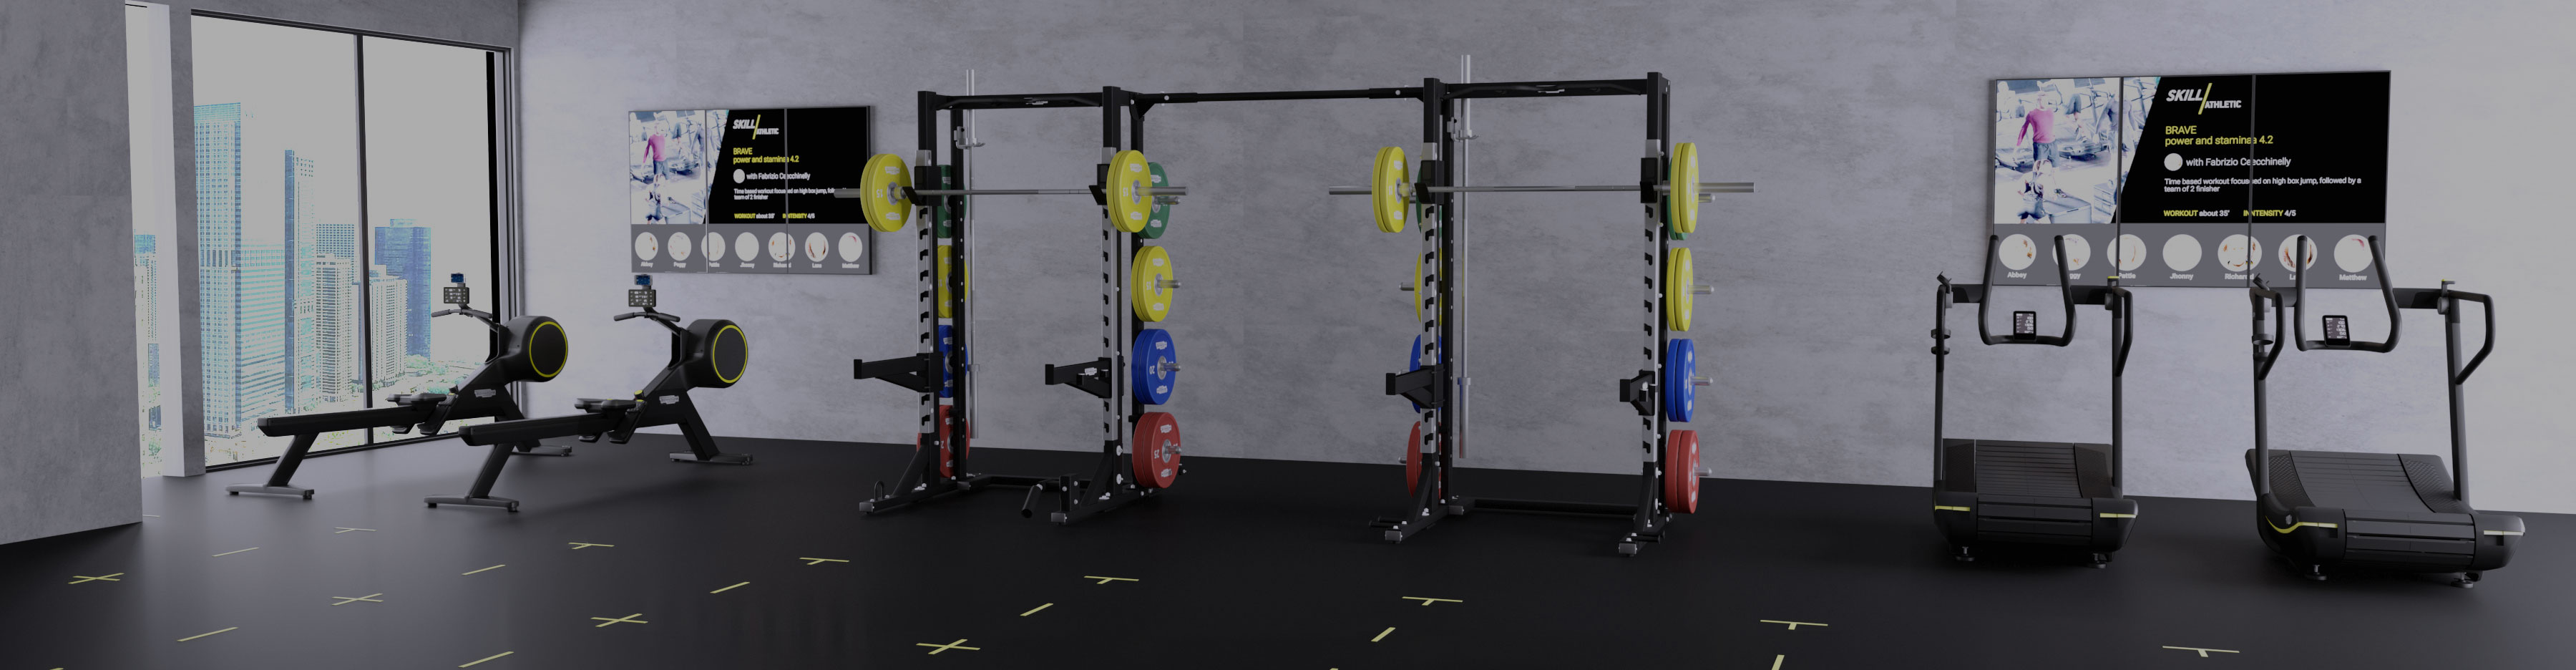 Accesorios rack para configurar tu área de entrenamiento fuerza con pesas